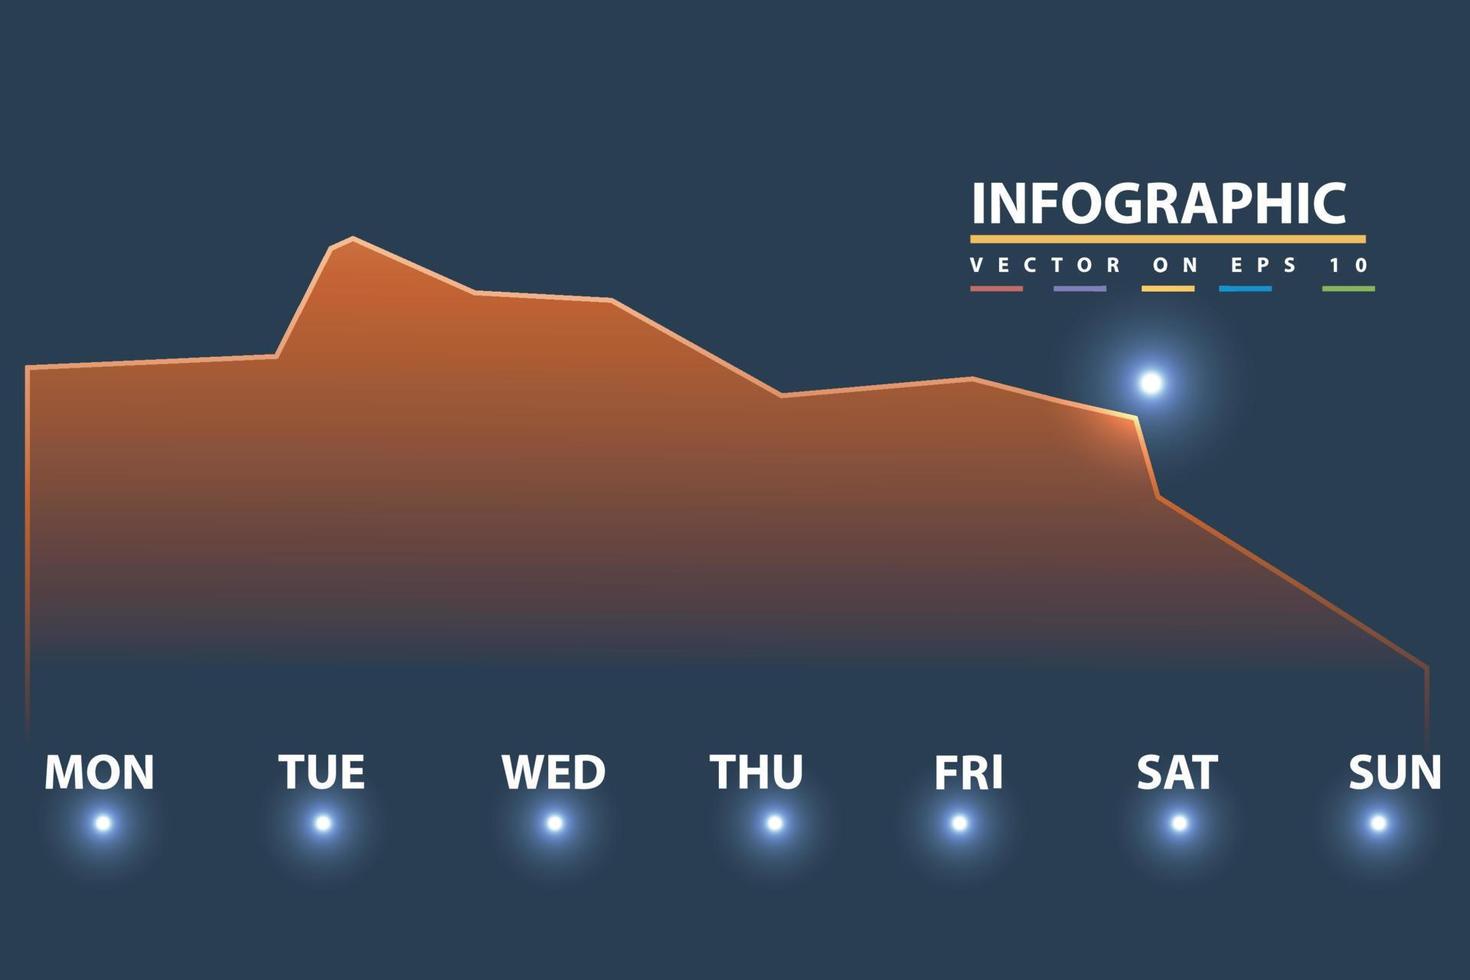 infographic visuell analys tidslinje element 1 vecka dag trafik finansiera begrepp. vektor illustration för företag presentation